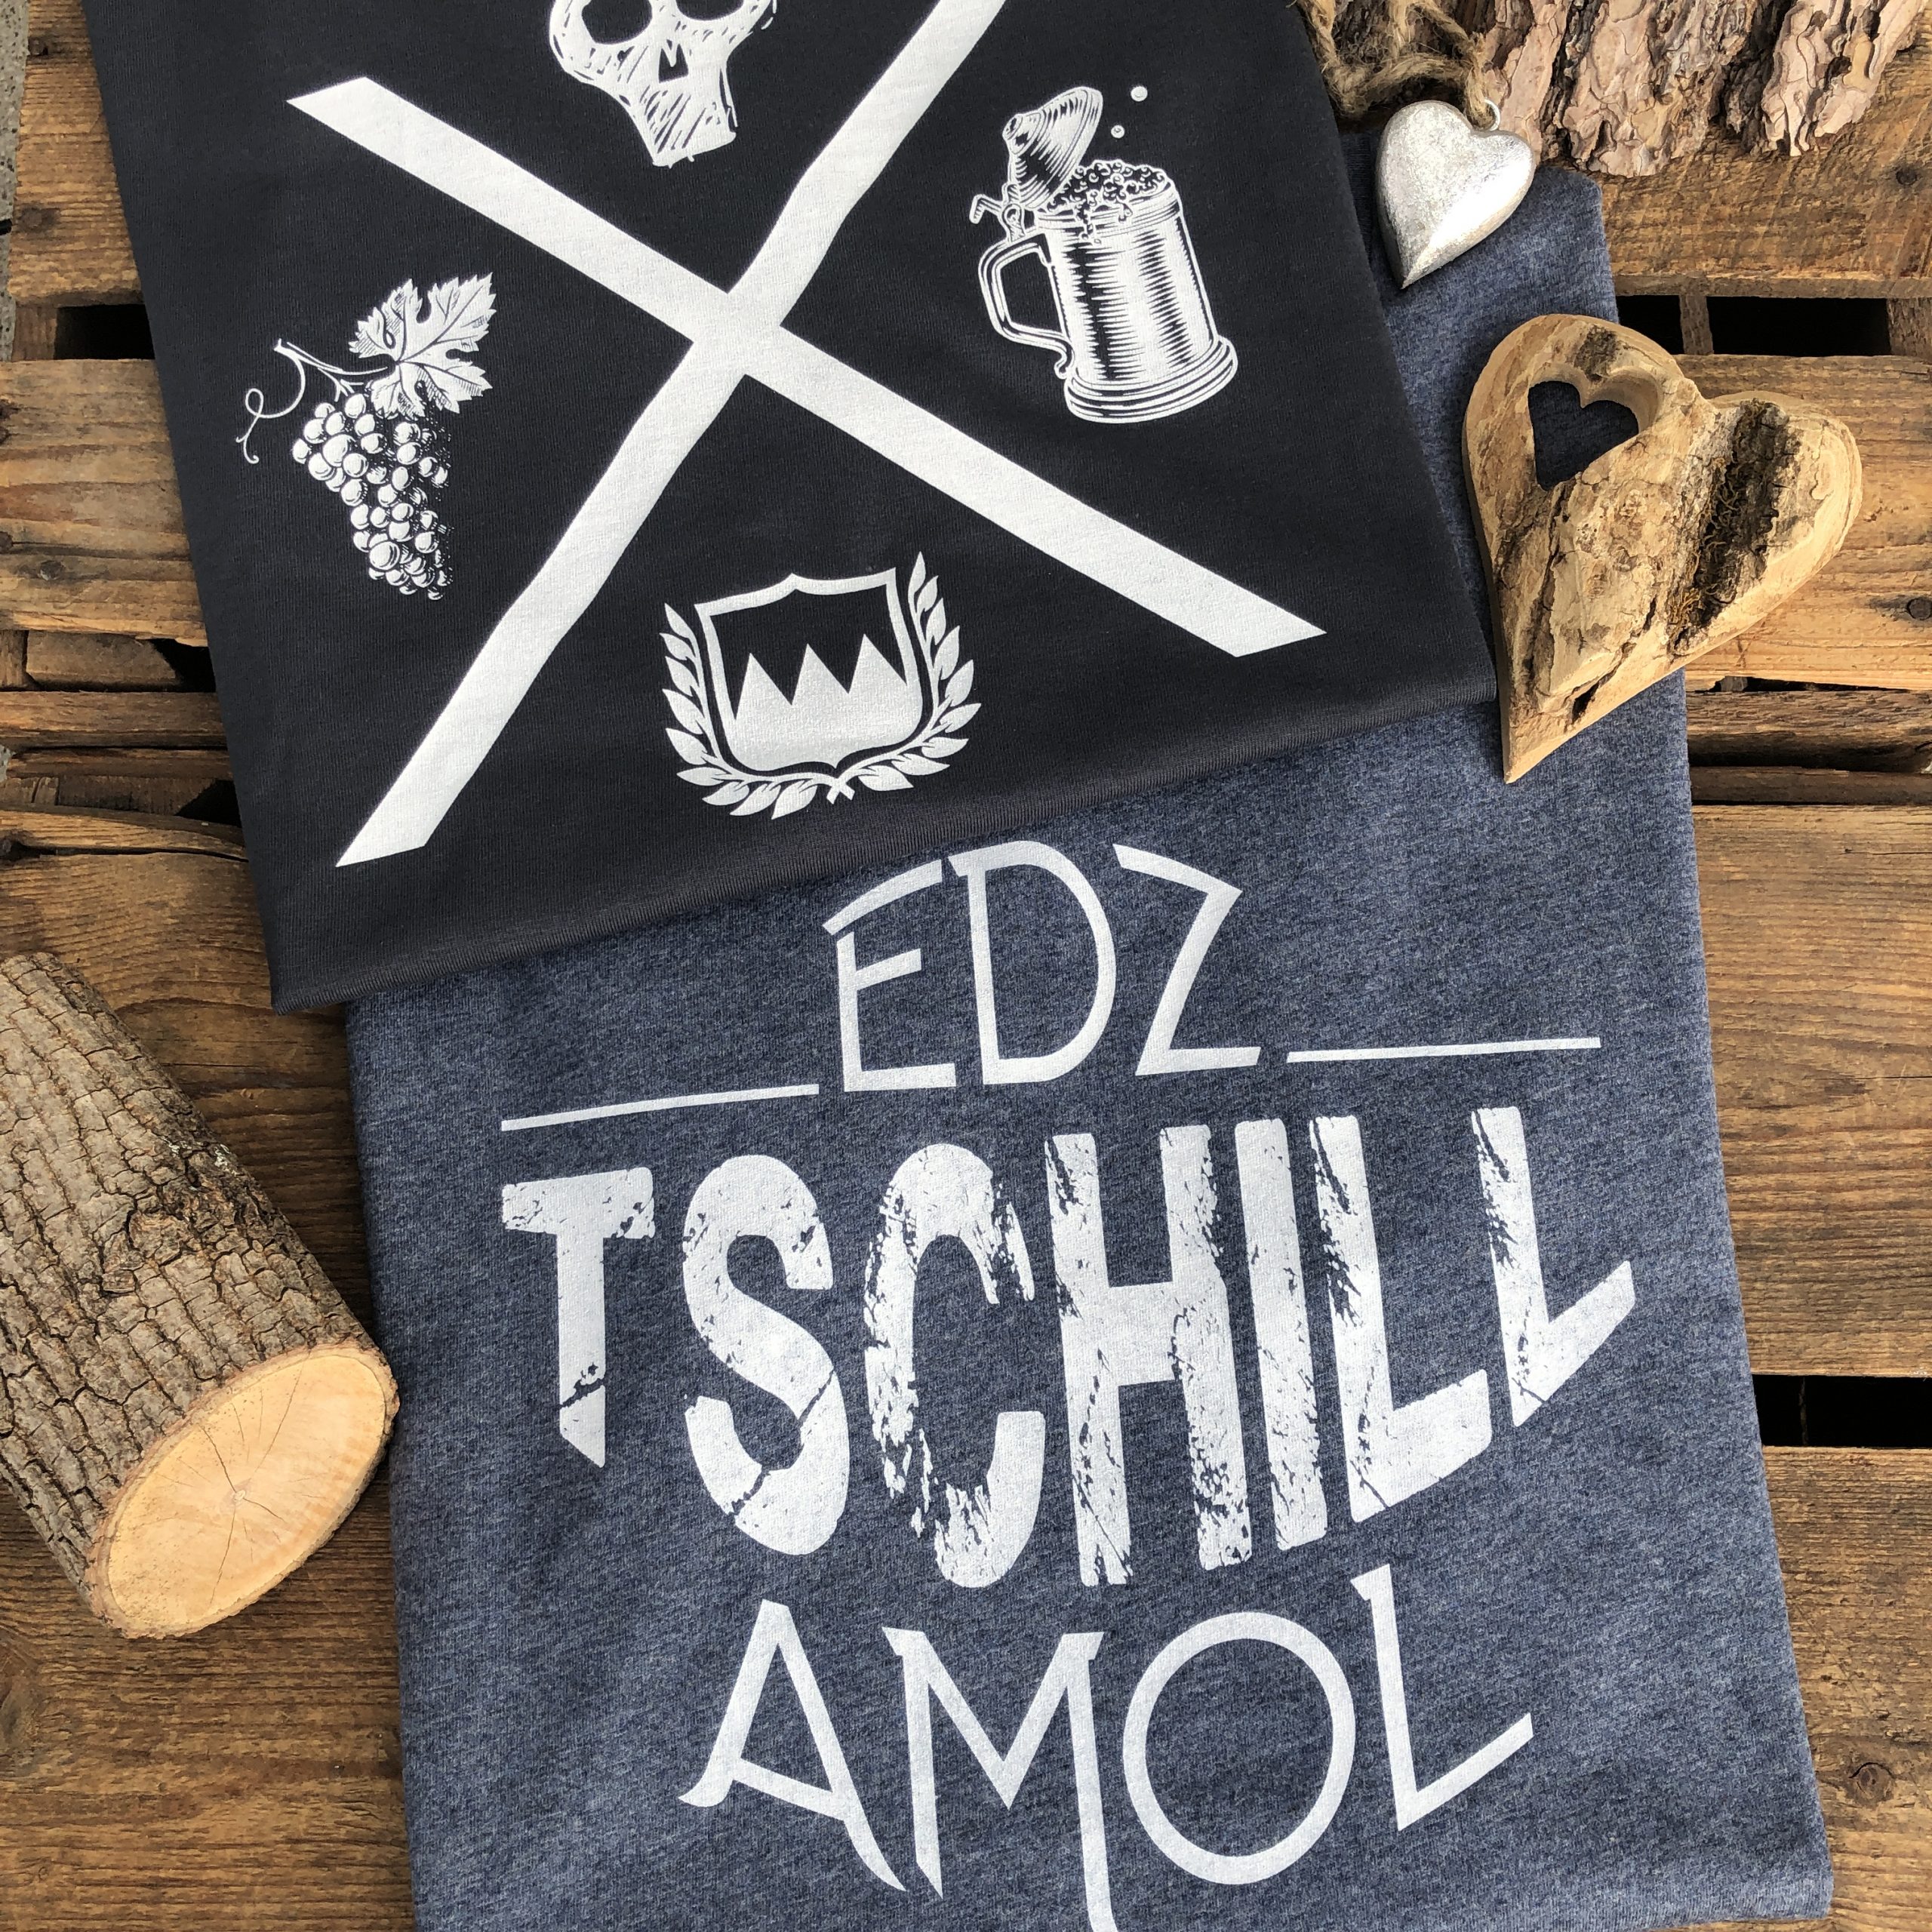 Edz Tschill Amol T-Shirt Franken